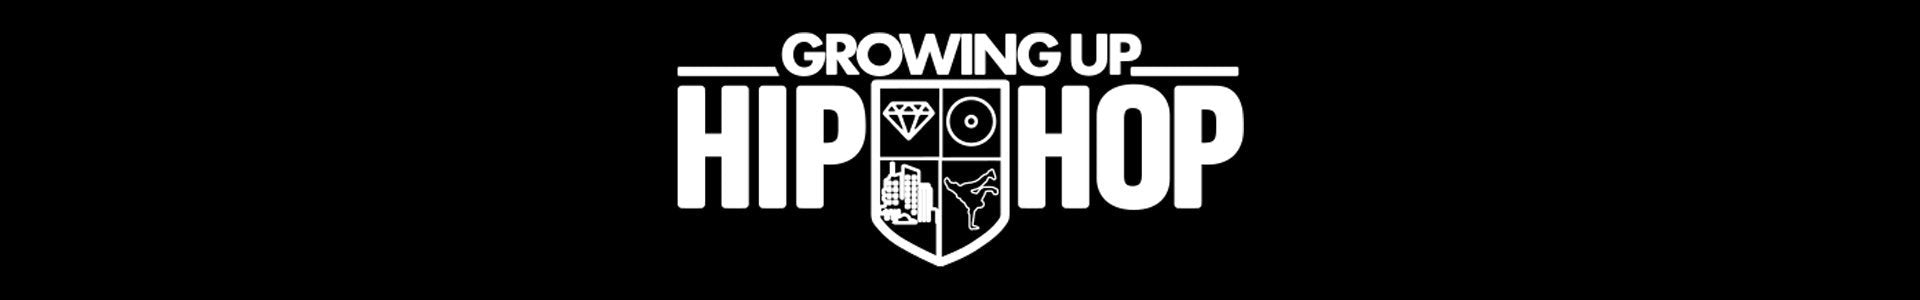 Growing Up Hip Hop